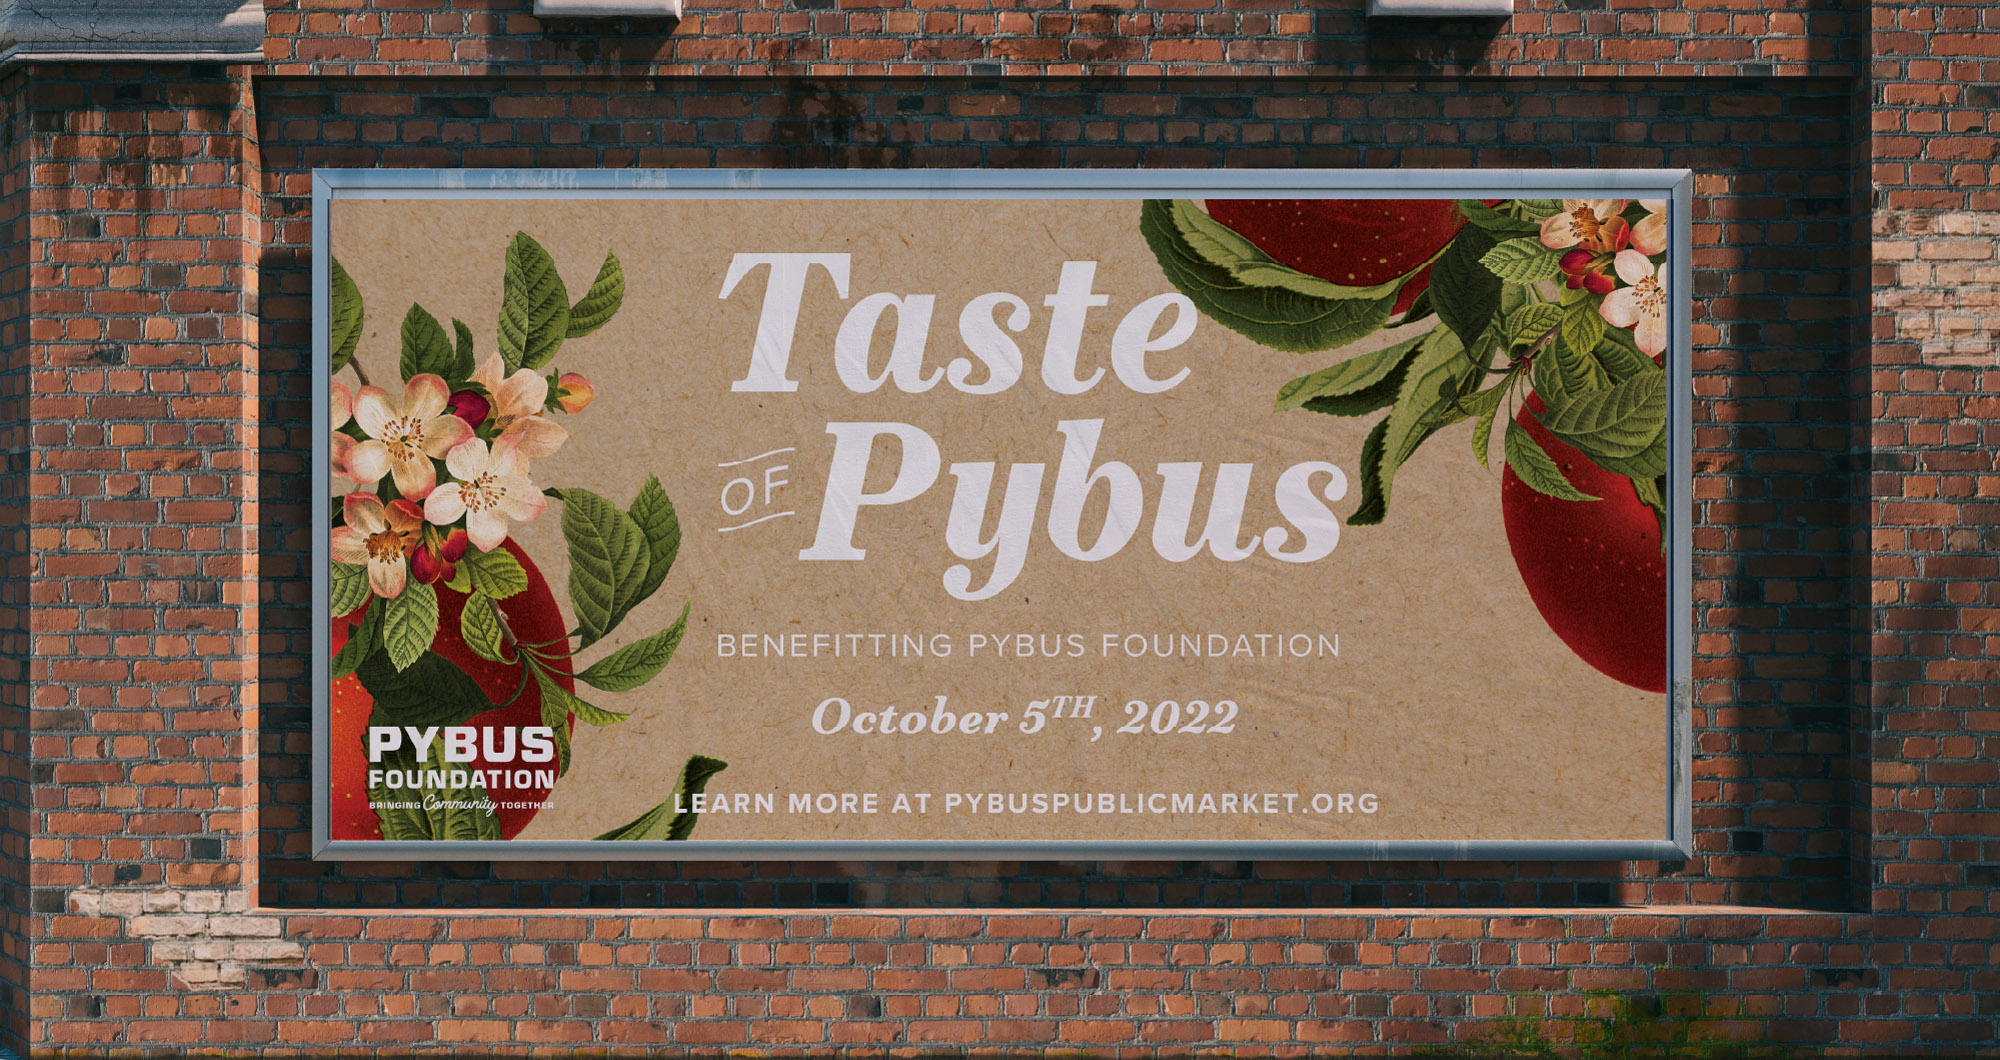 Taste of Pybus billboard